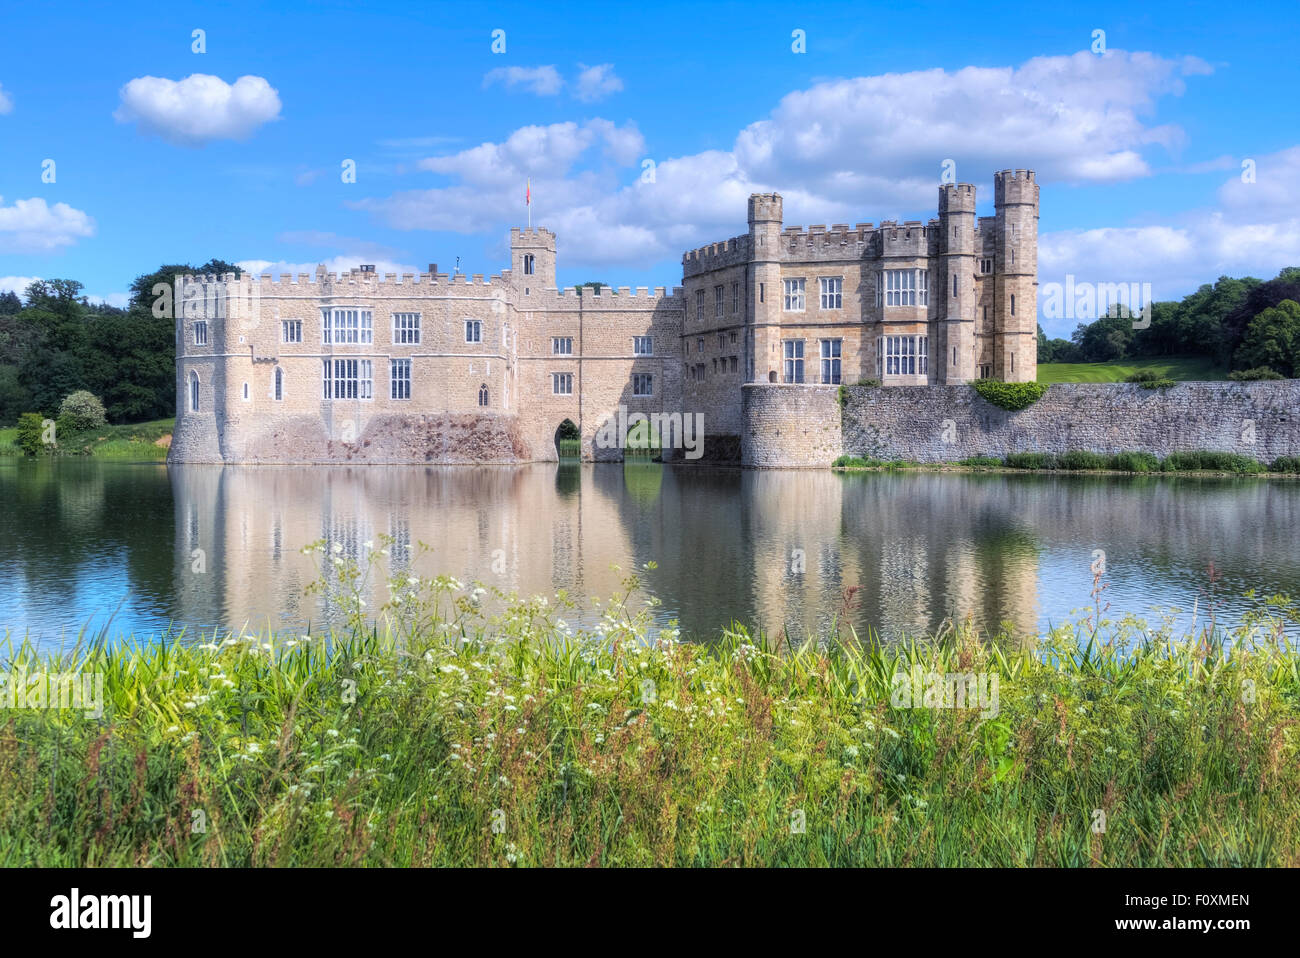 Le Château de Leeds, Maidstone, Kent, Angleterre, Royaume-Uni Banque D'Images